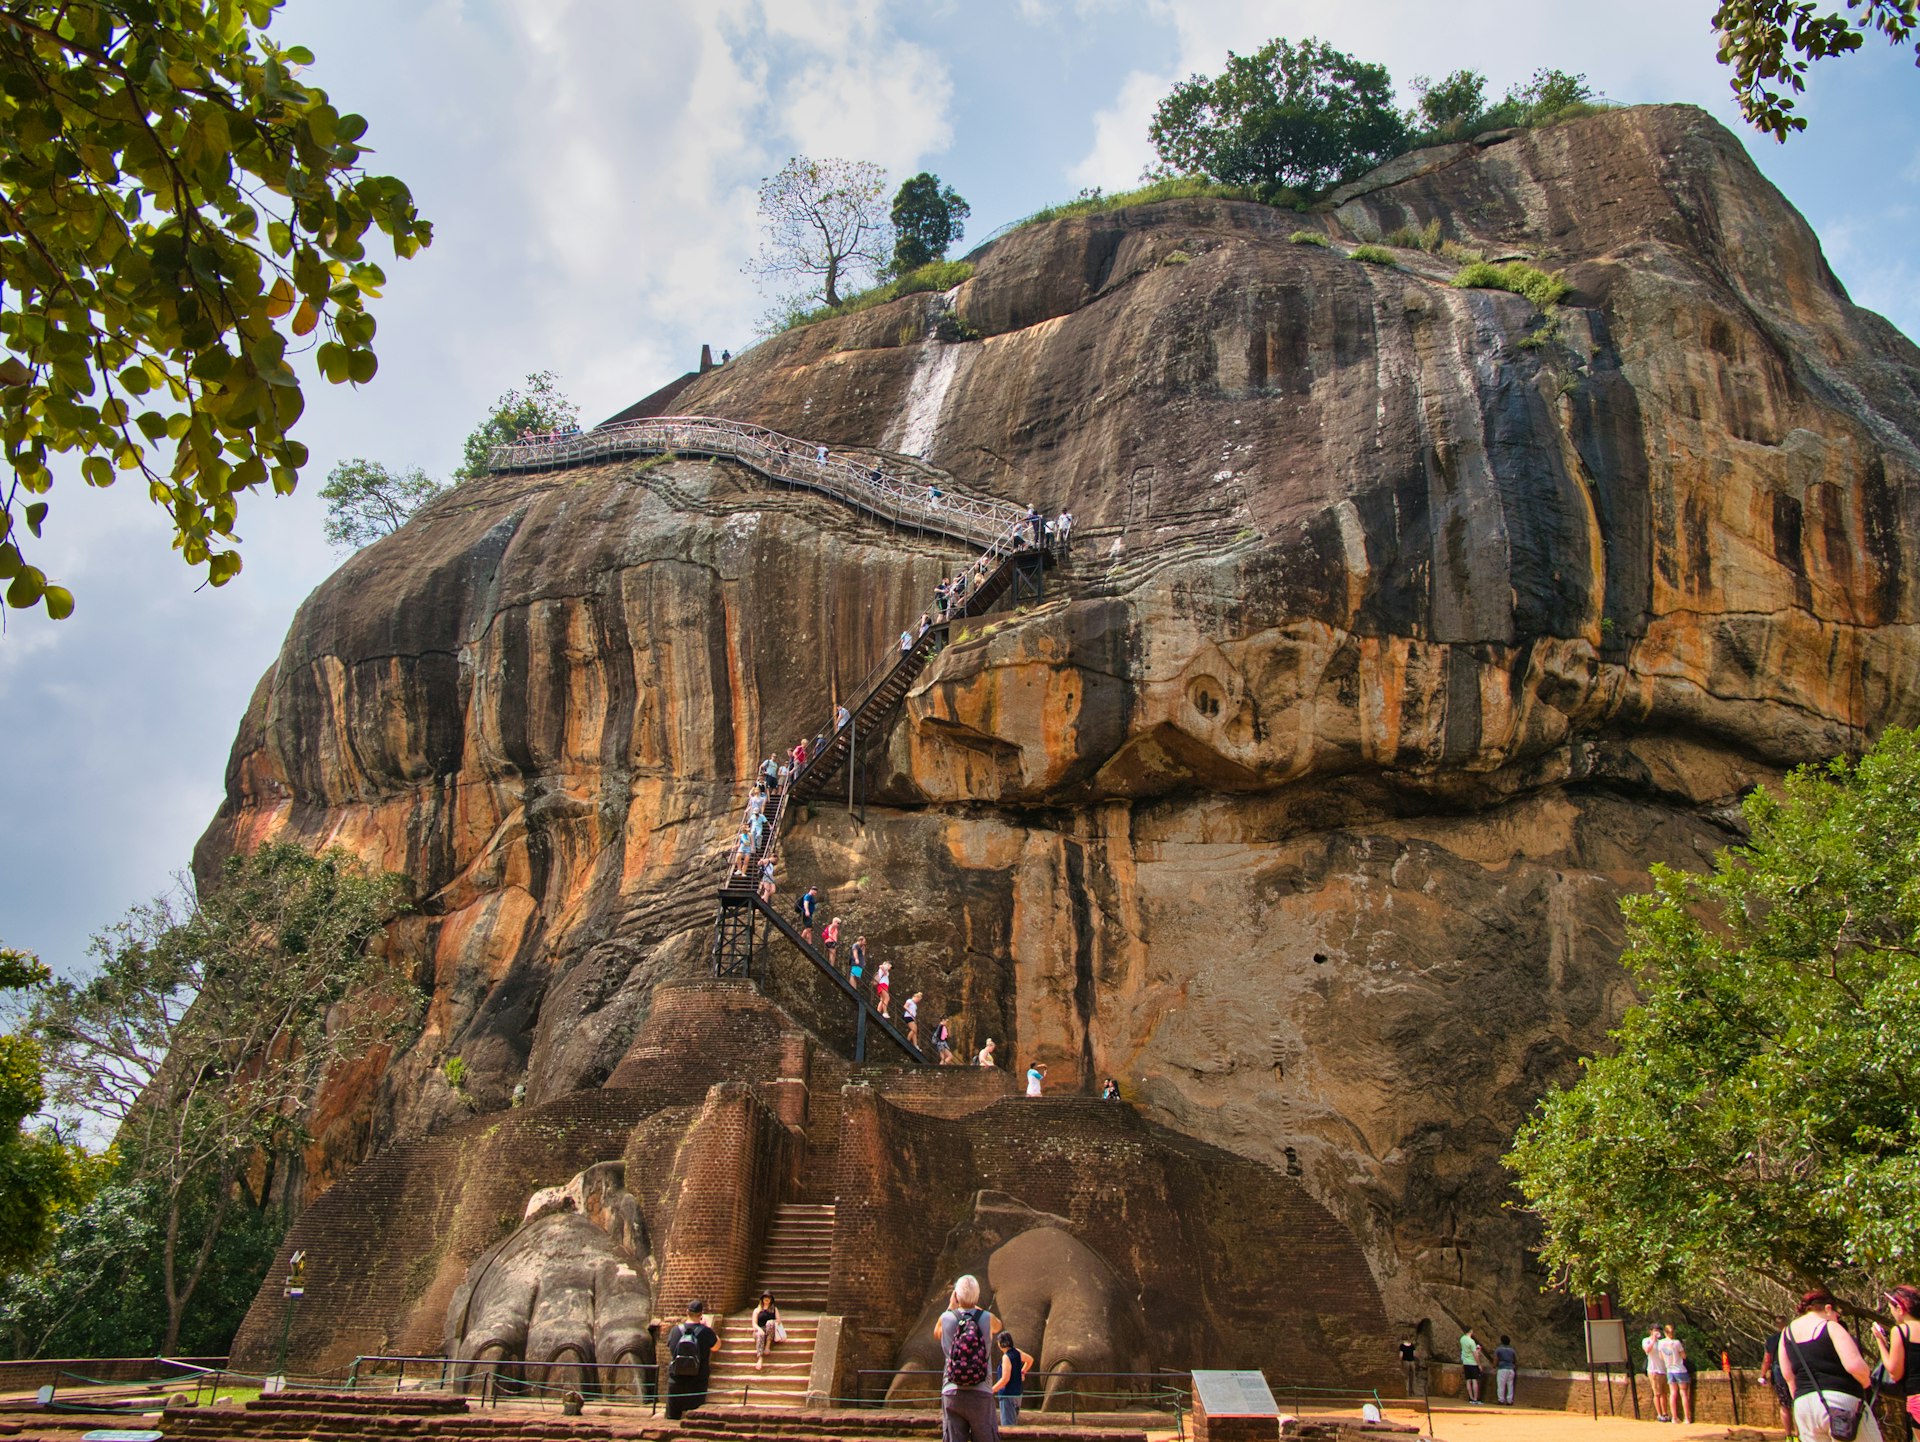 Ruwan's 5 top sites to visit in Sri Lanka